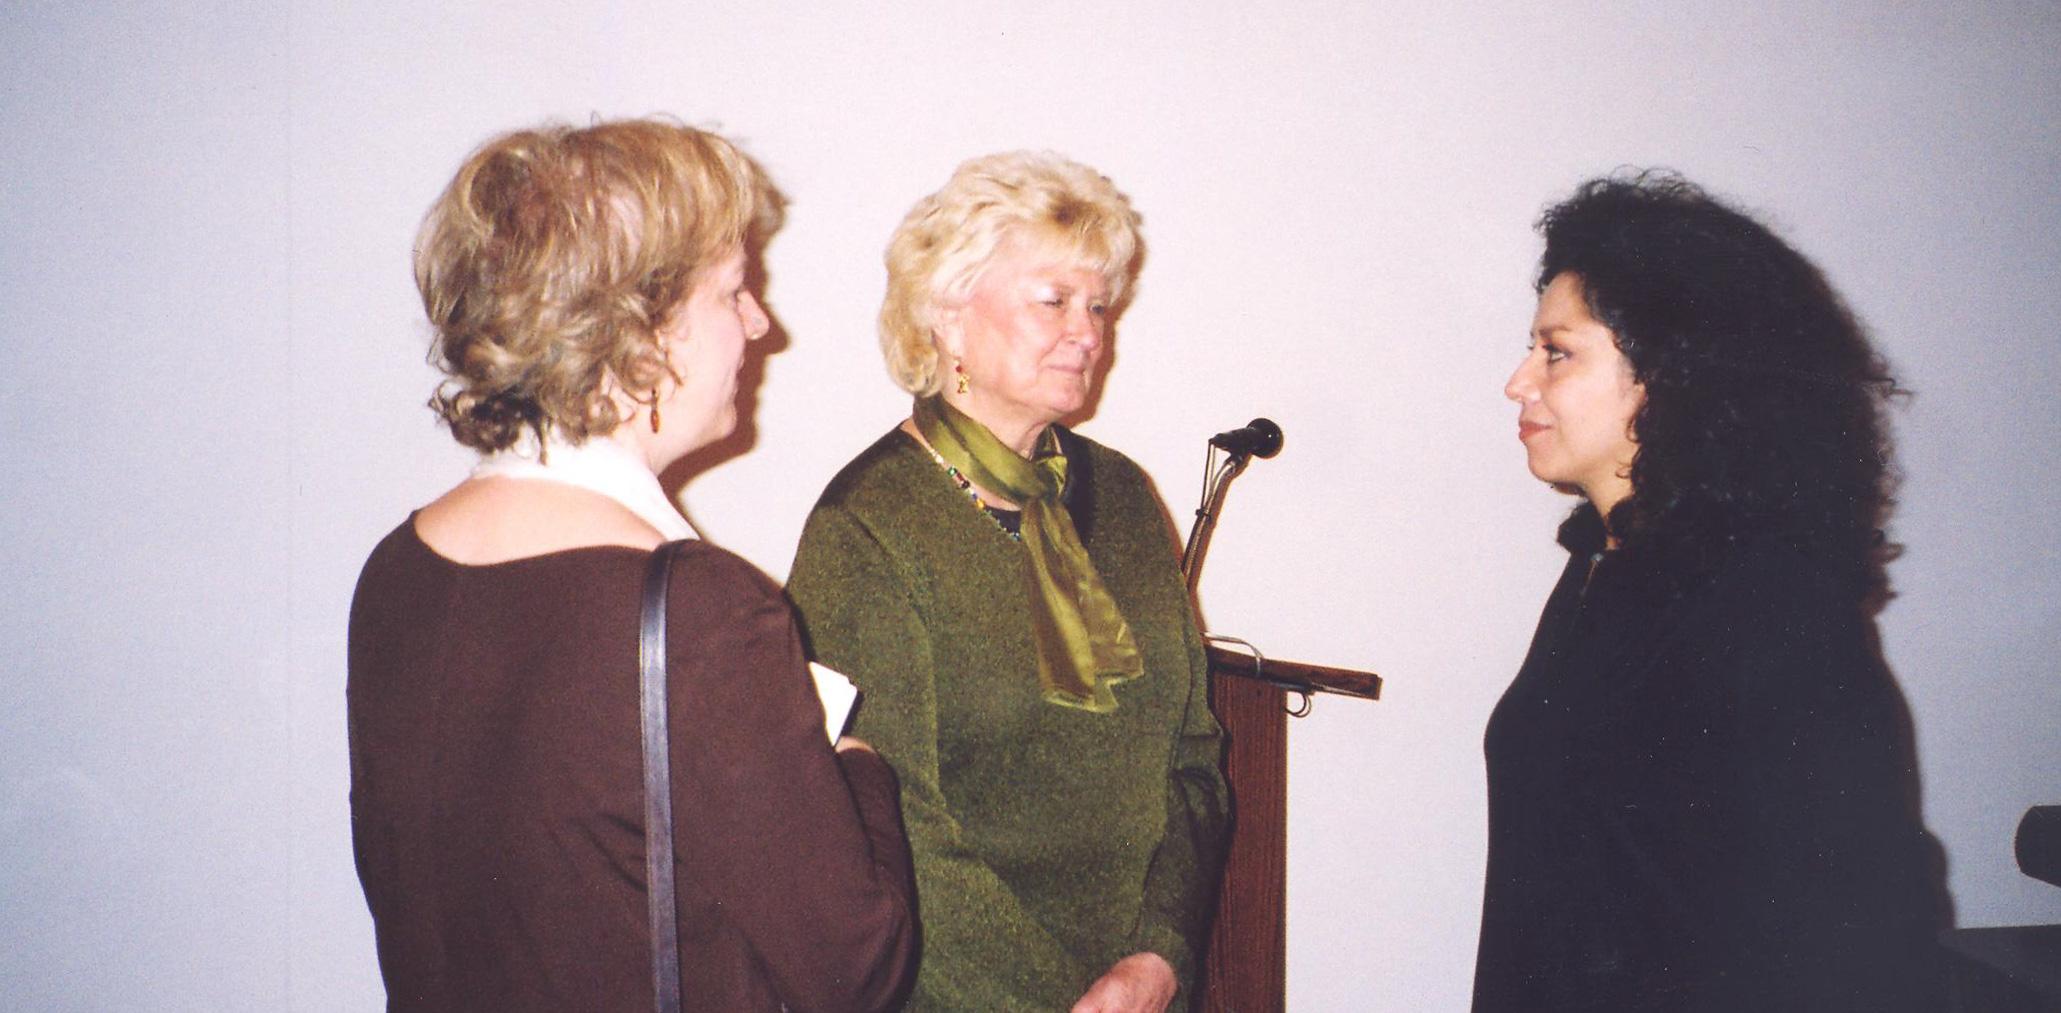 Doris Salcedo speaks with two event attendants.